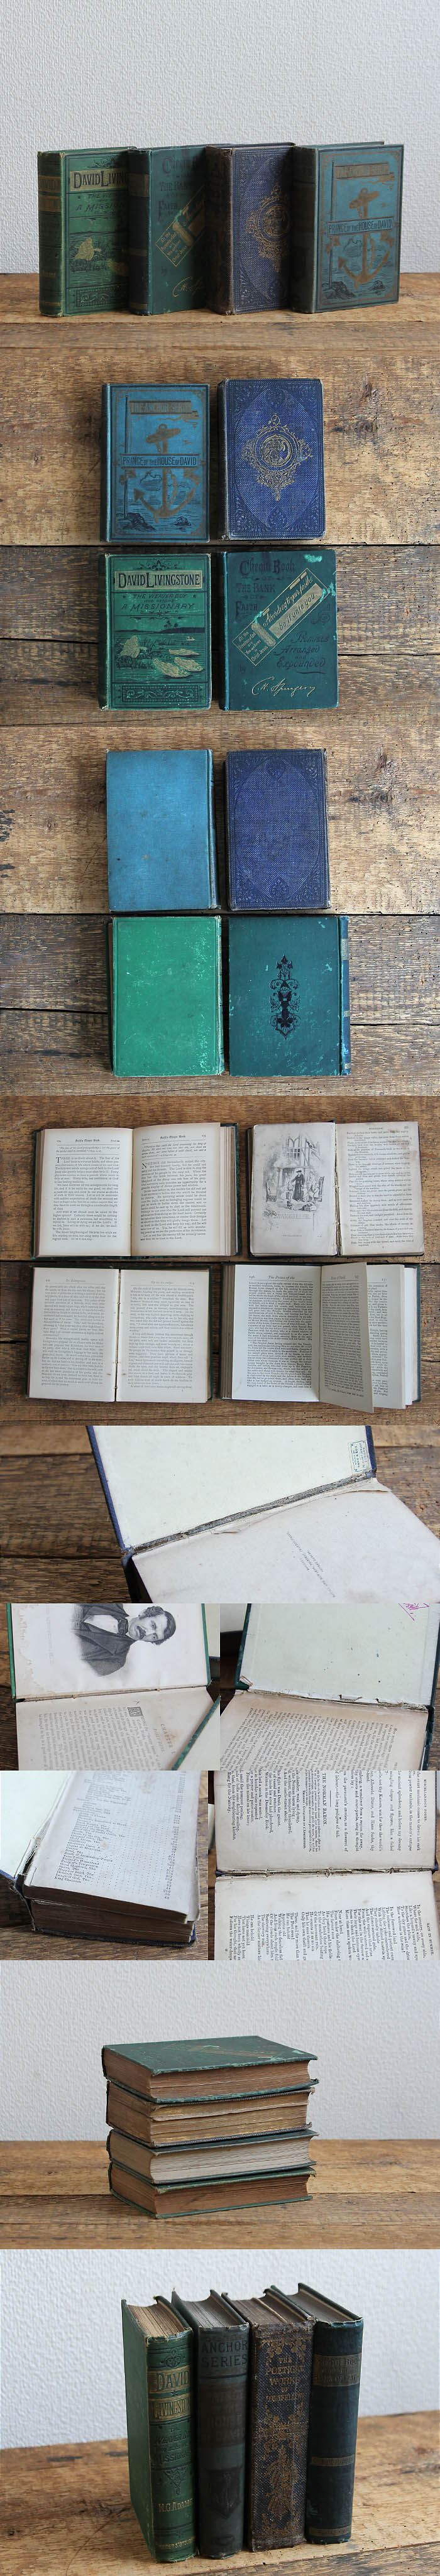 イギリス アンティークブック 4冊セット 古書 インテリア雑貨 洋書 ディスプレイ「雰囲気パーフェクト」V-929